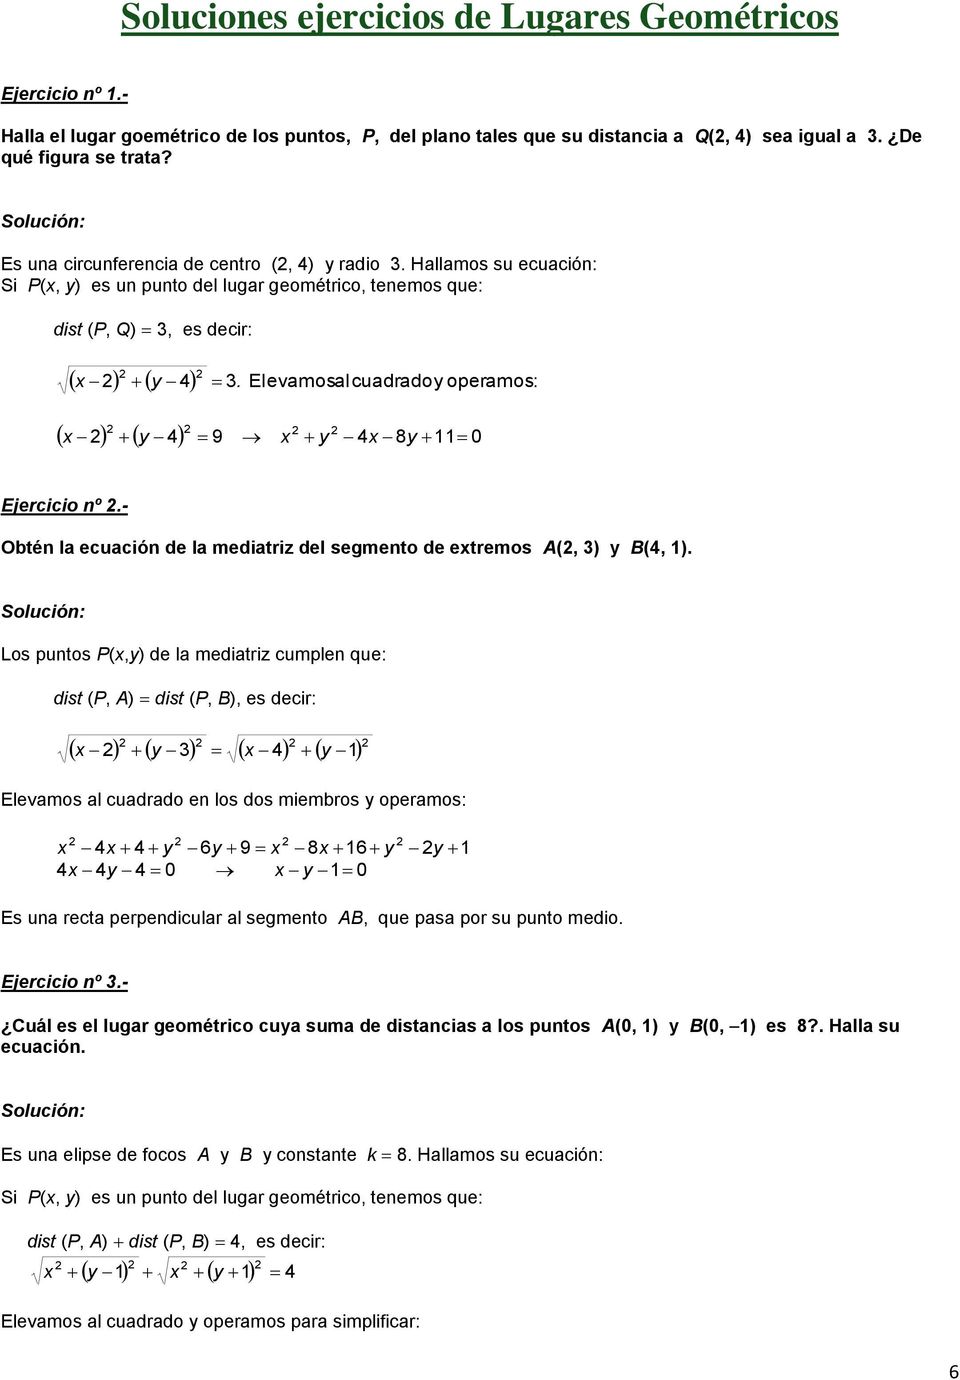 - Obtén la ecuación de la mediatriz del segmento de etremos A(, ) B(, ).